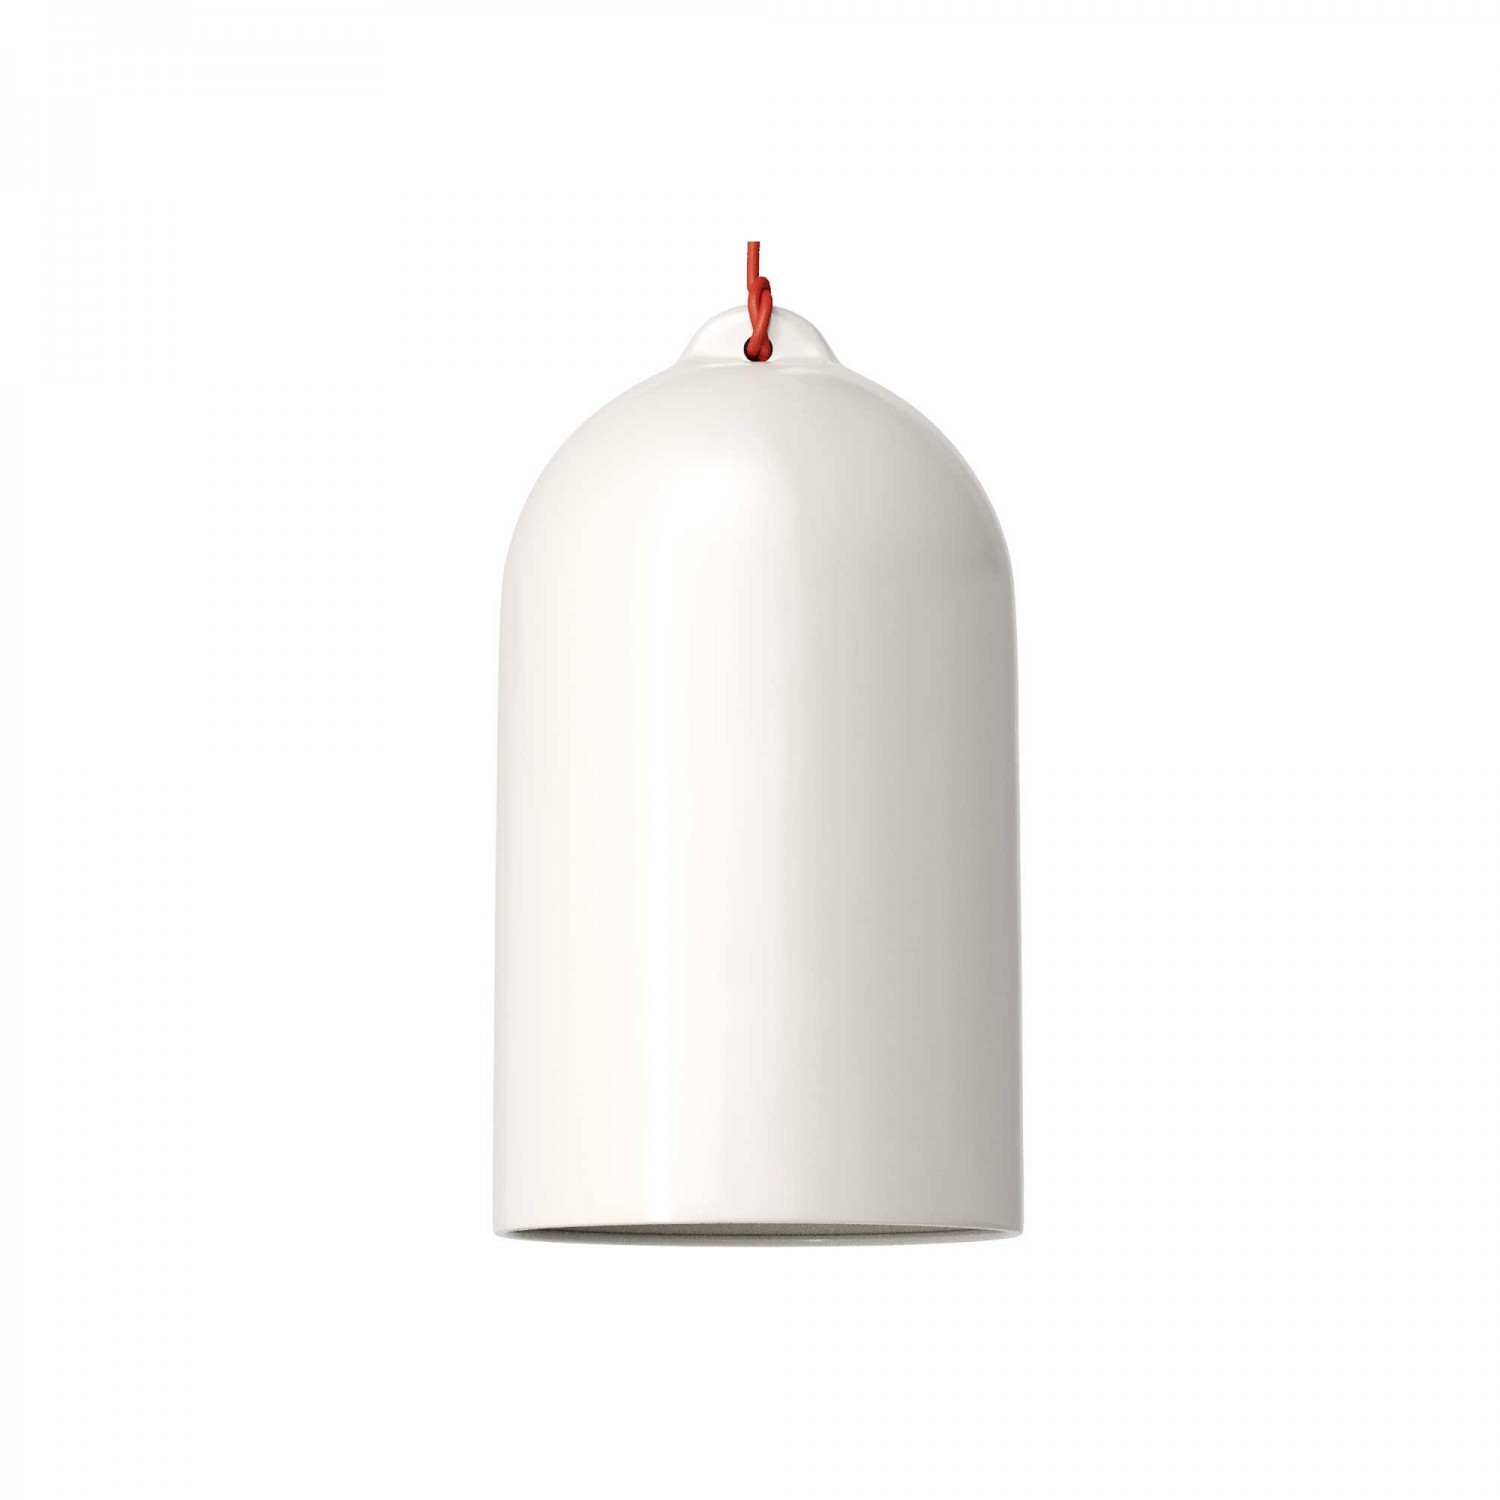 Viseče svetilo s tekstilnim kablom in keramičnim senčilom Zvonec XL- Izdelano v Italiji